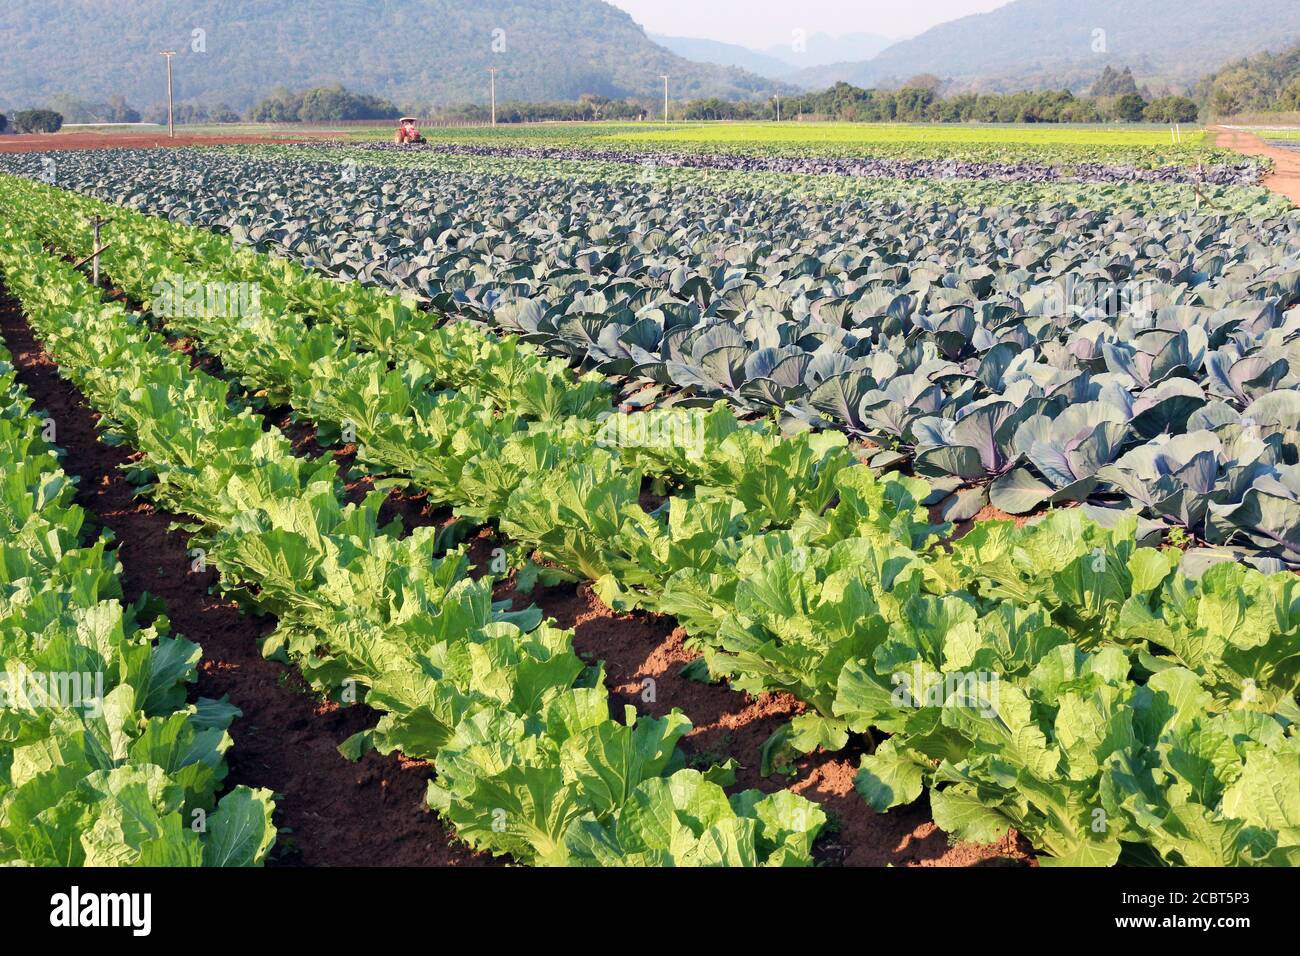 Agrarindustrie. Plantagen von Gemüse und Lebensmitteln für die Welt. Stockfoto